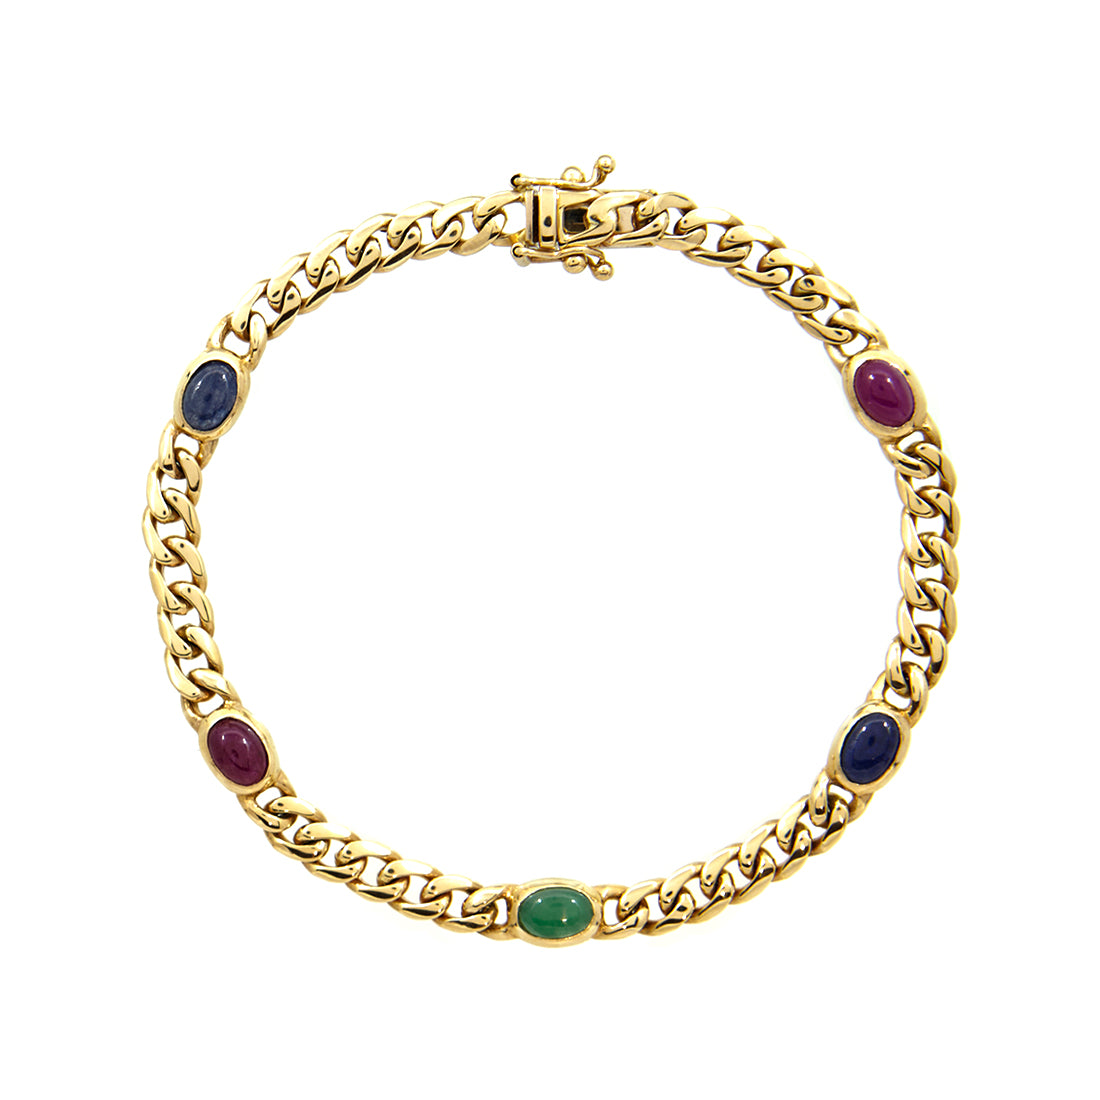 Maxima-Armband aus Gelbgold mit Rubin, Saphir und Smaragd